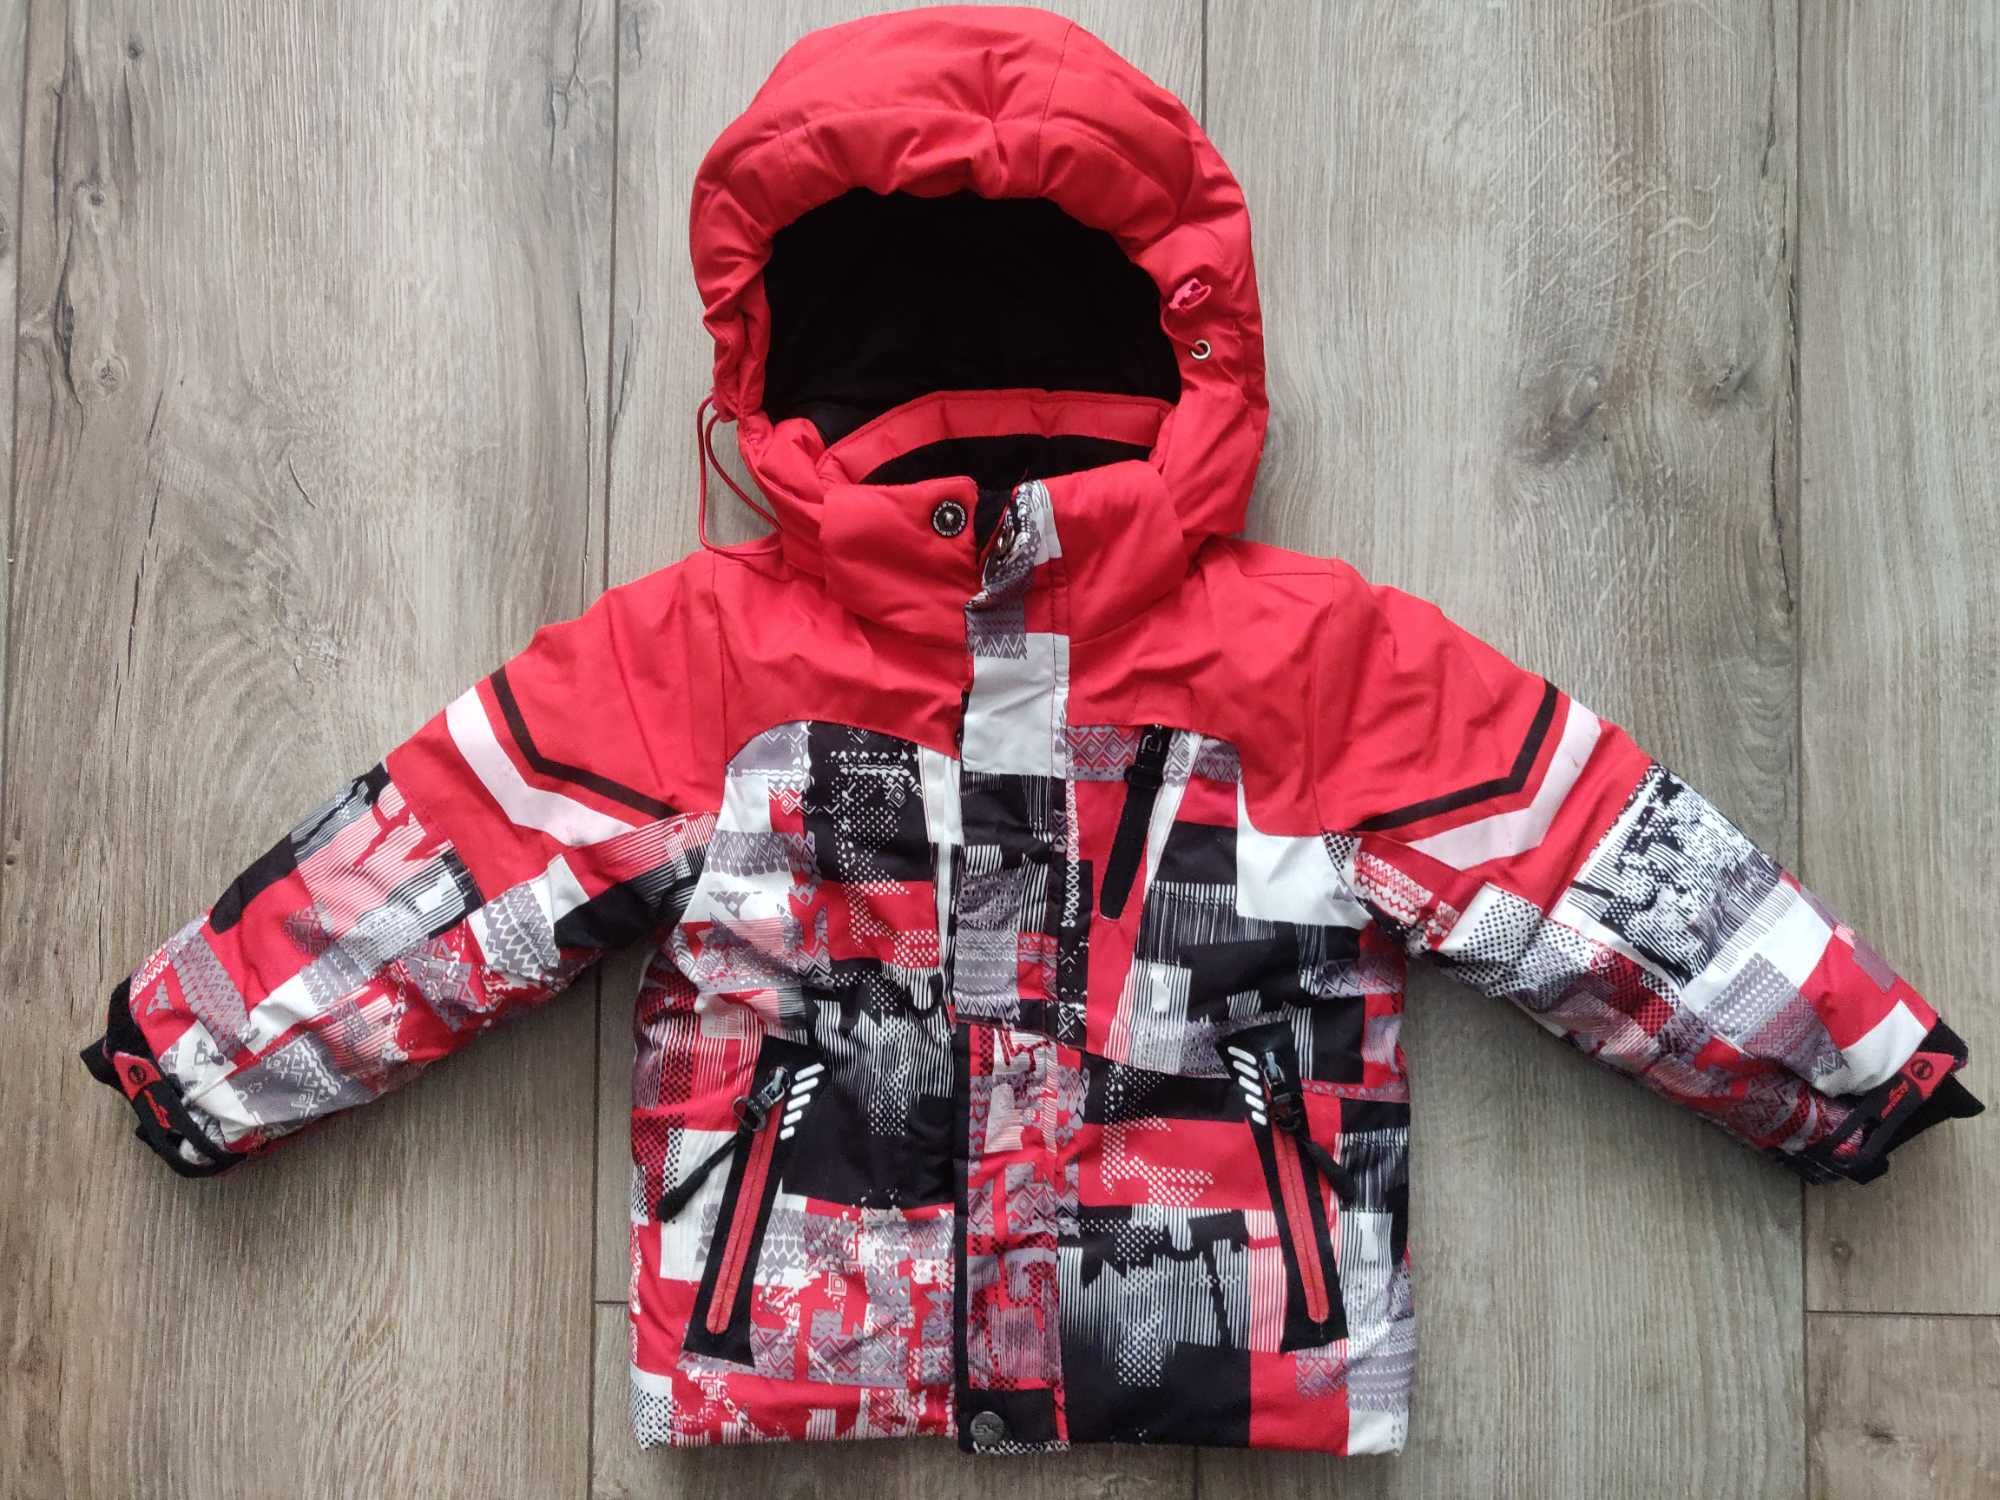 Лыжная термокуртка Scorрian outdoor рост 98 красная + принт